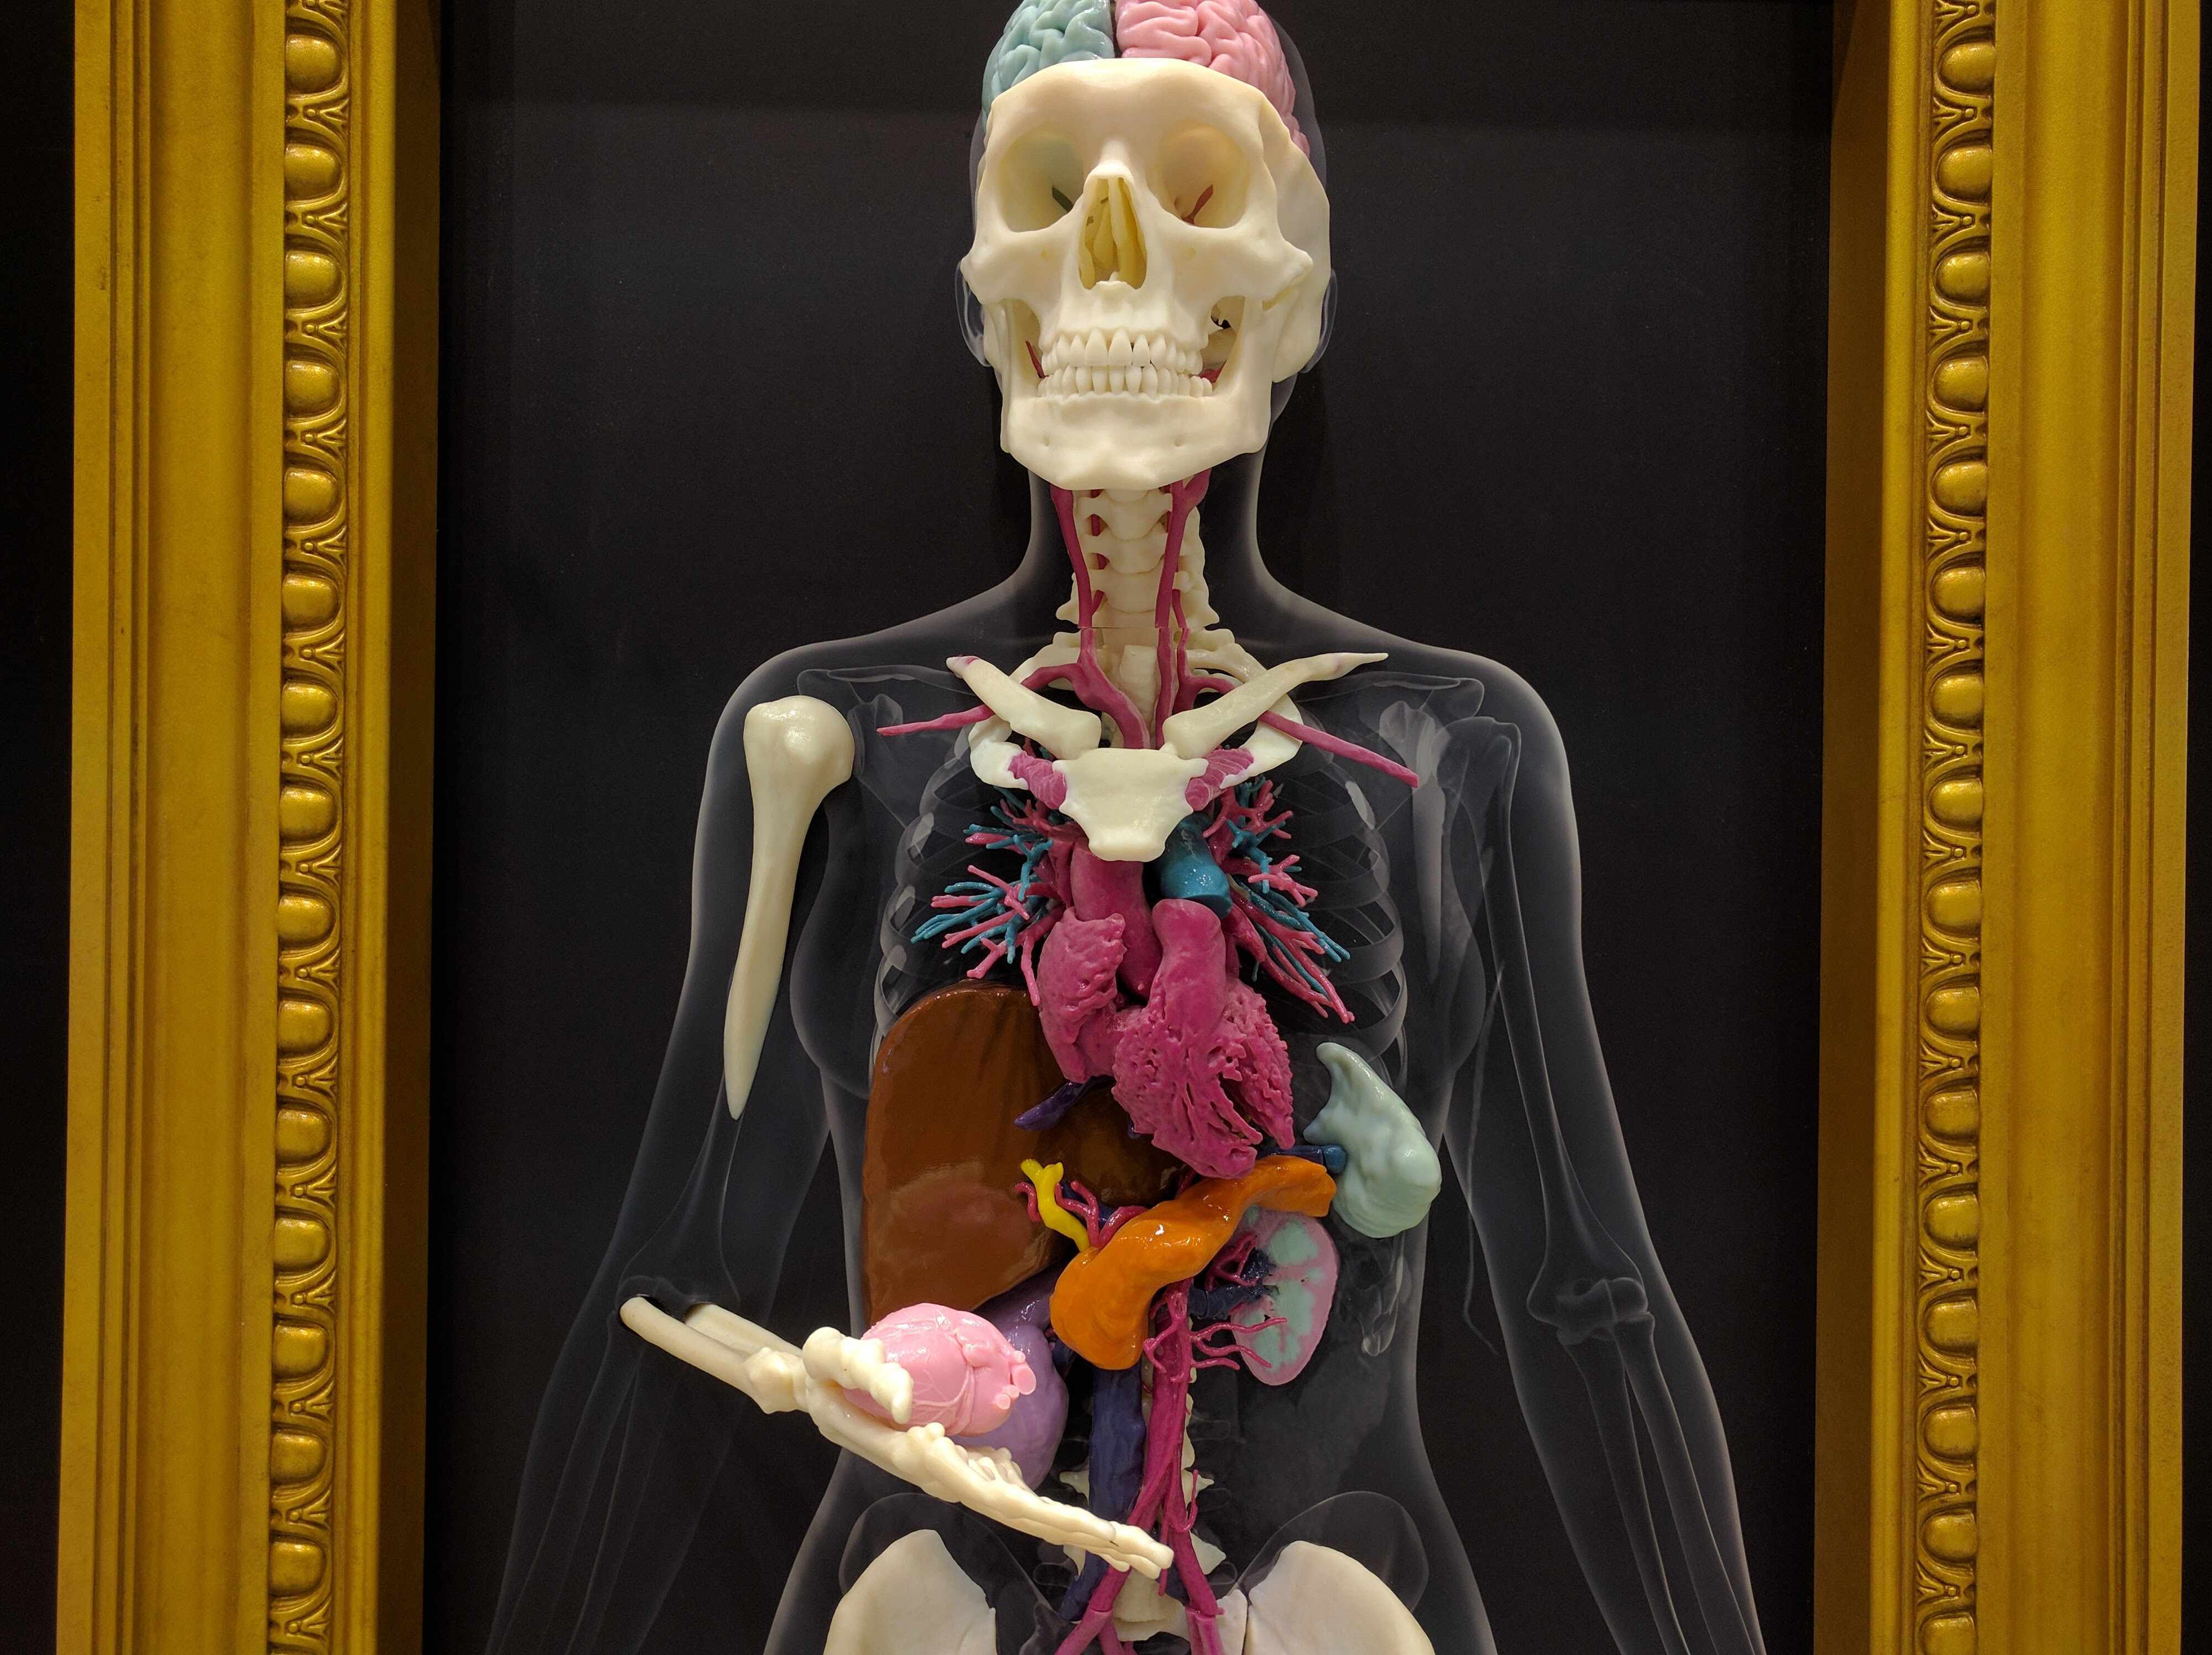 3d radiology model of human skeleton